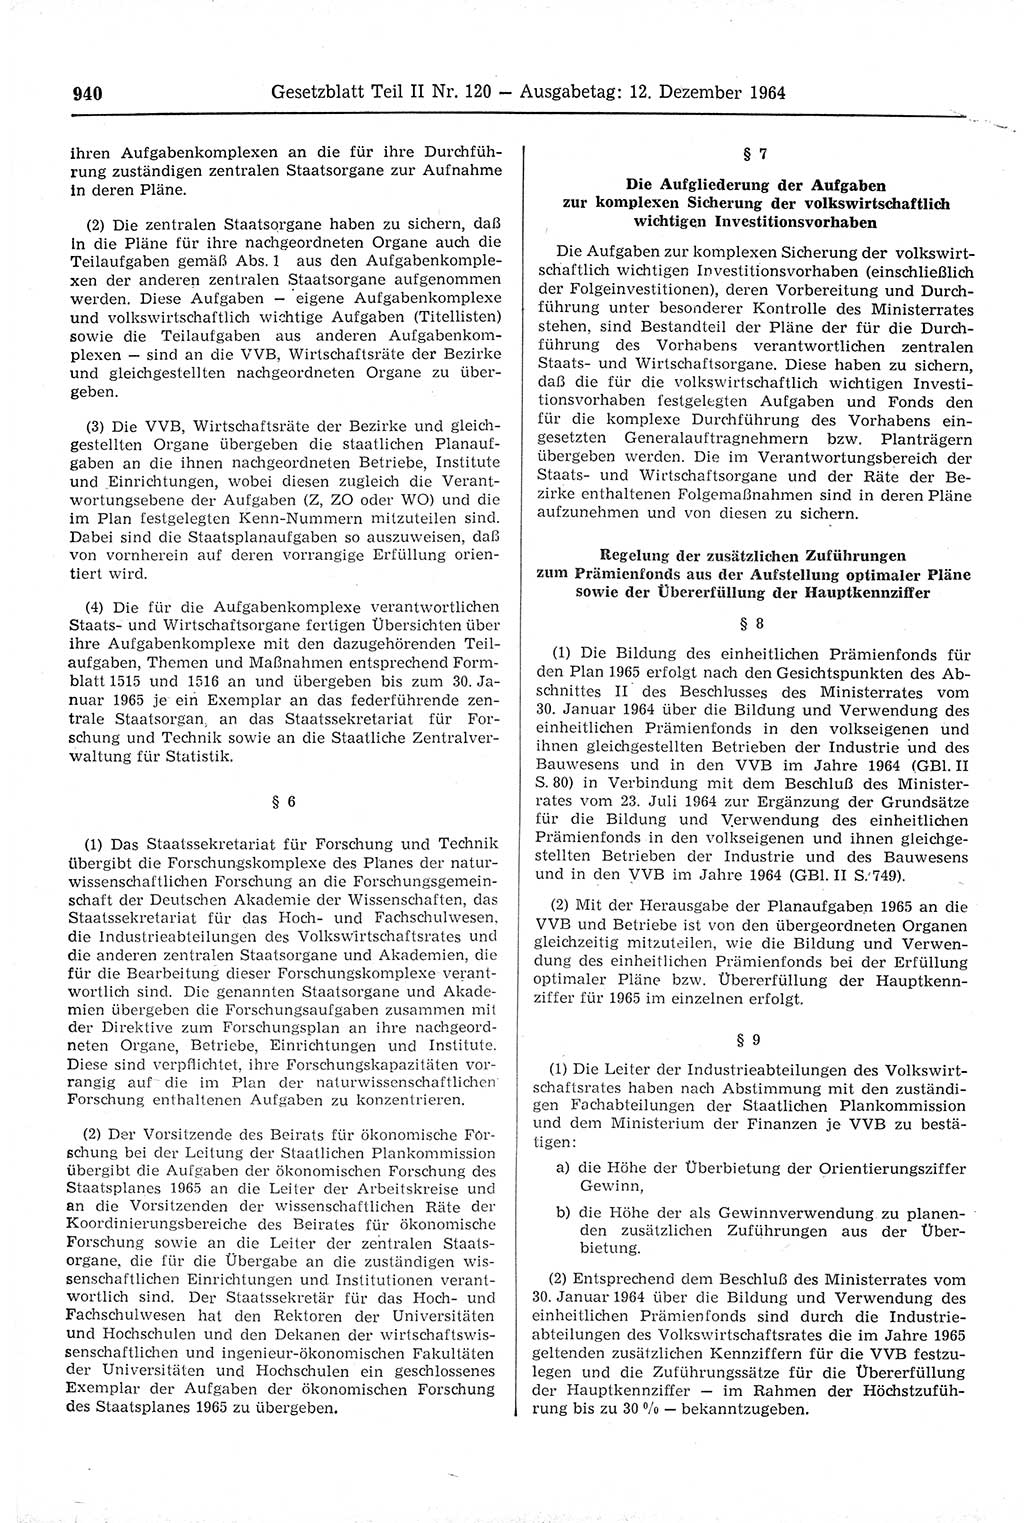 Gesetzblatt (GBl.) der Deutschen Demokratischen Republik (DDR) Teil ⅠⅠ 1964, Seite 940 (GBl. DDR ⅠⅠ 1964, S. 940)